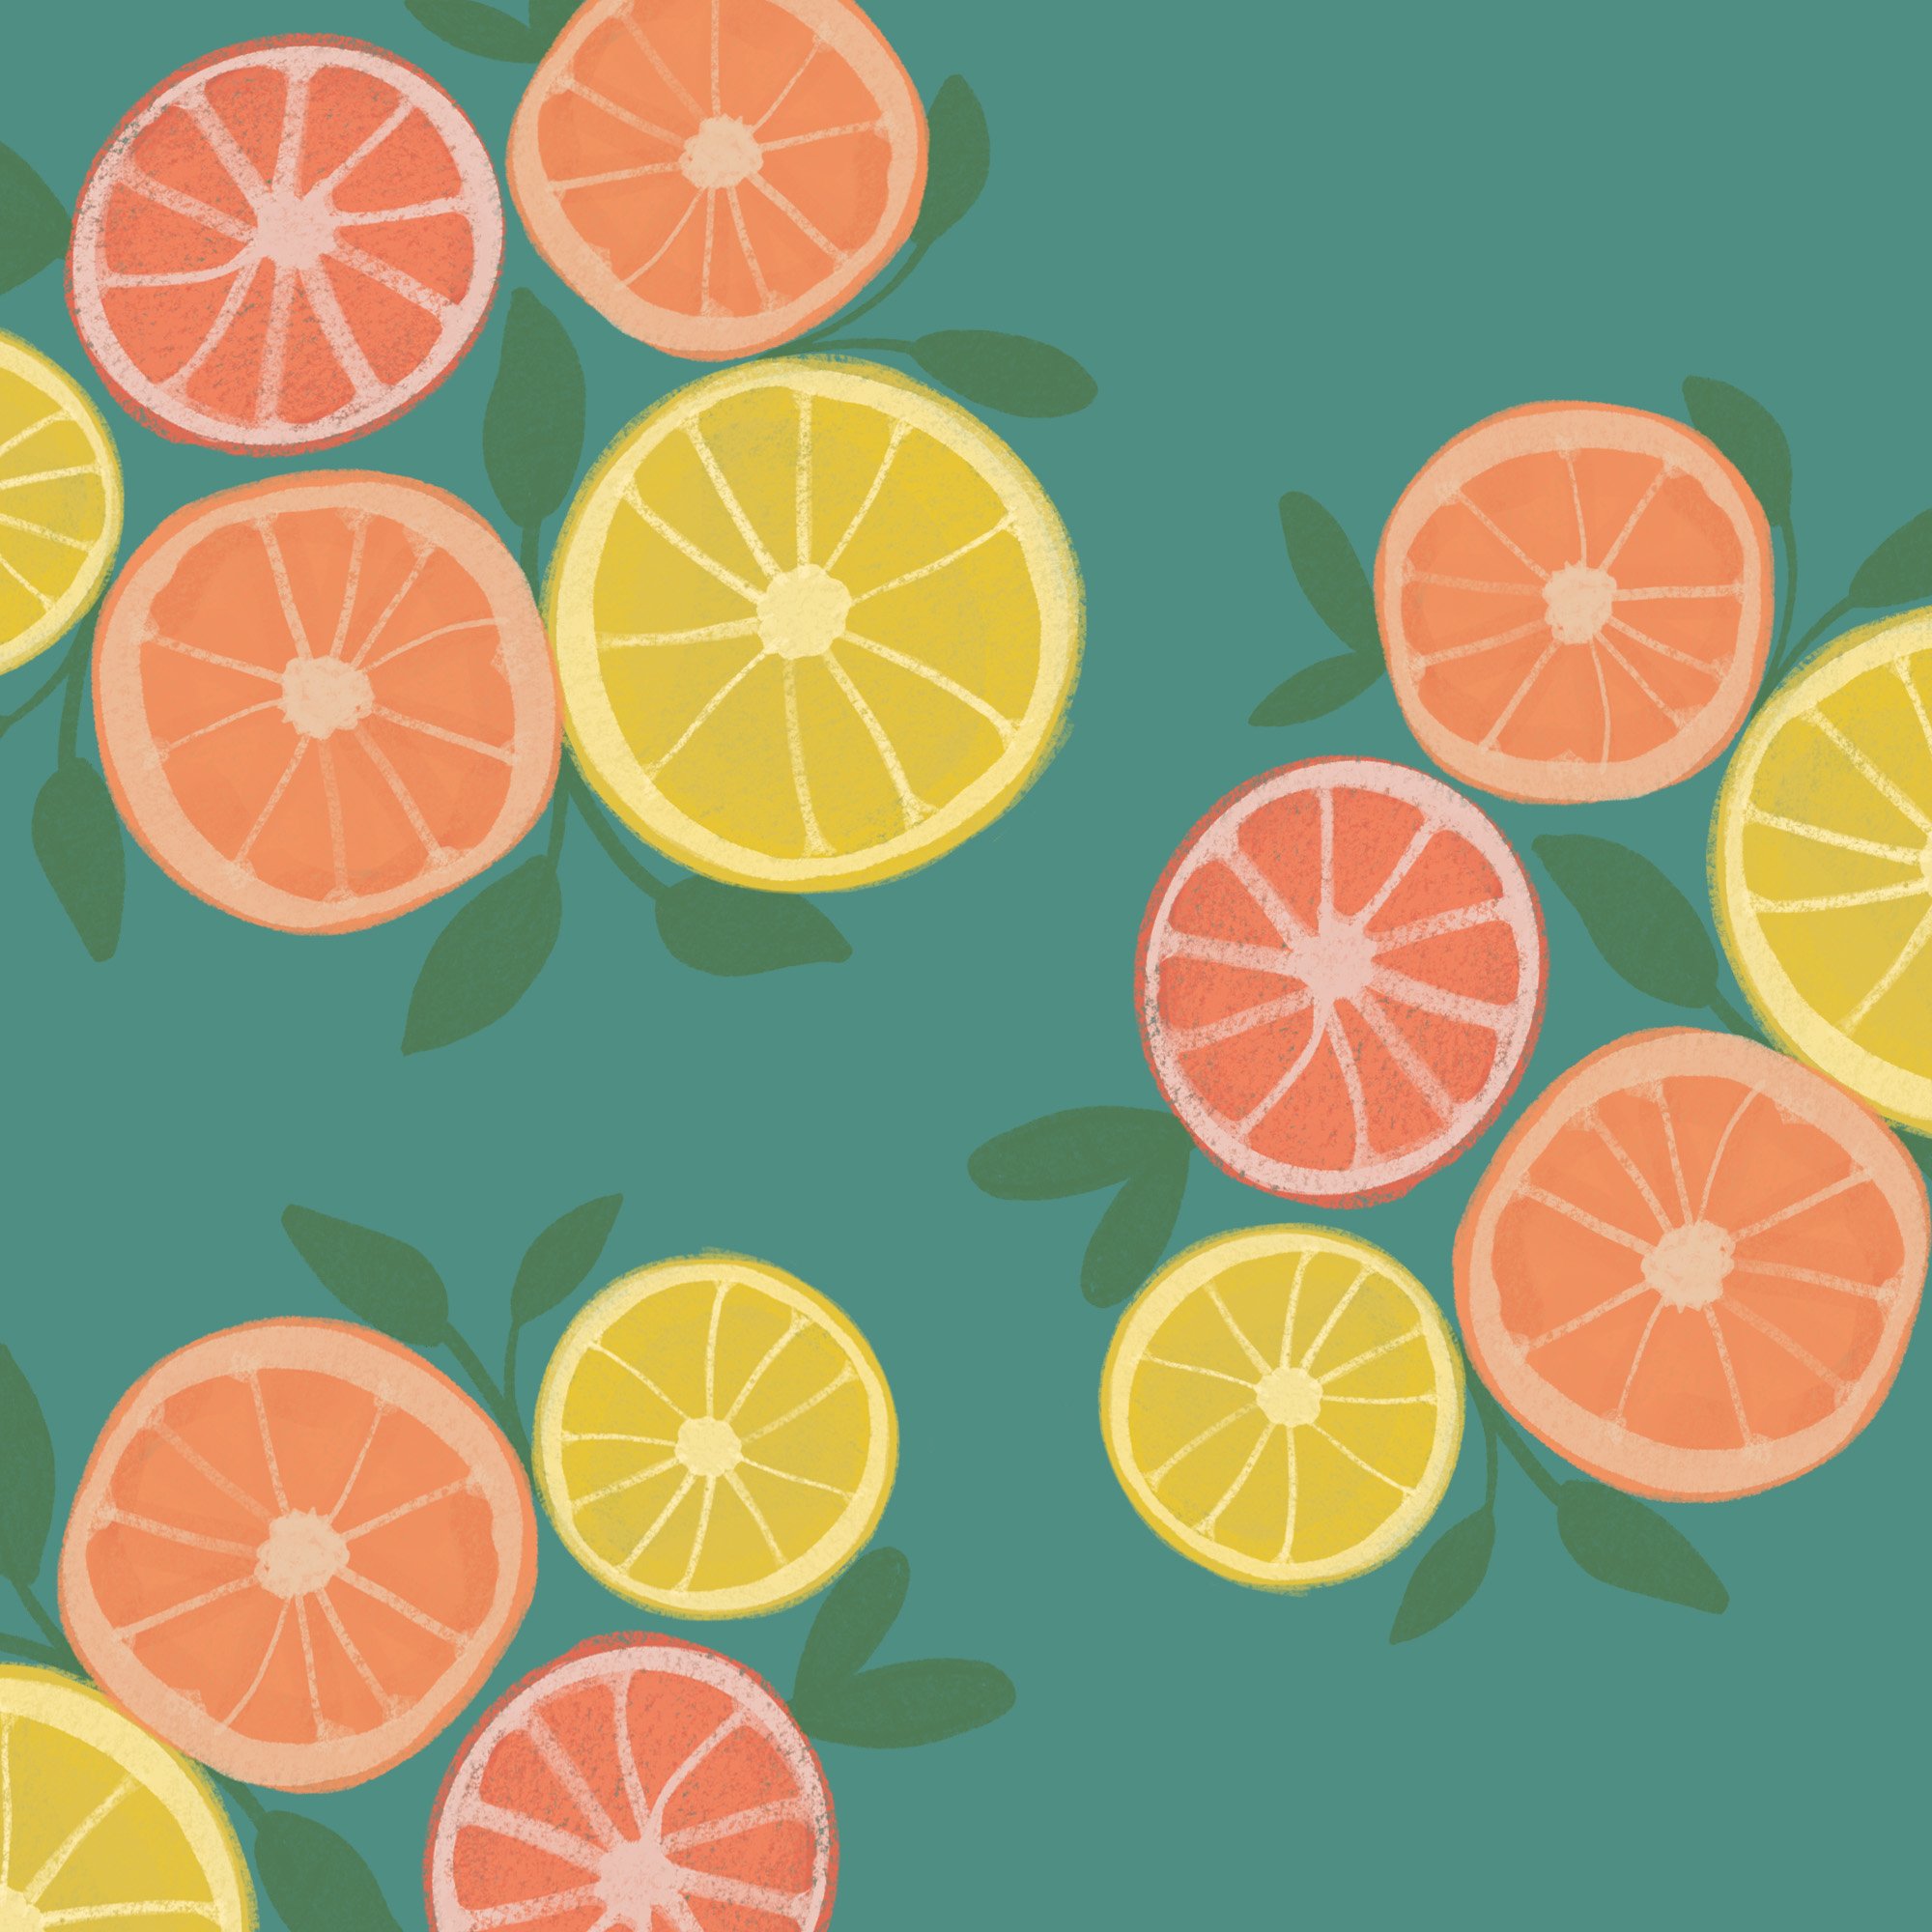 citrus fruit image8 936